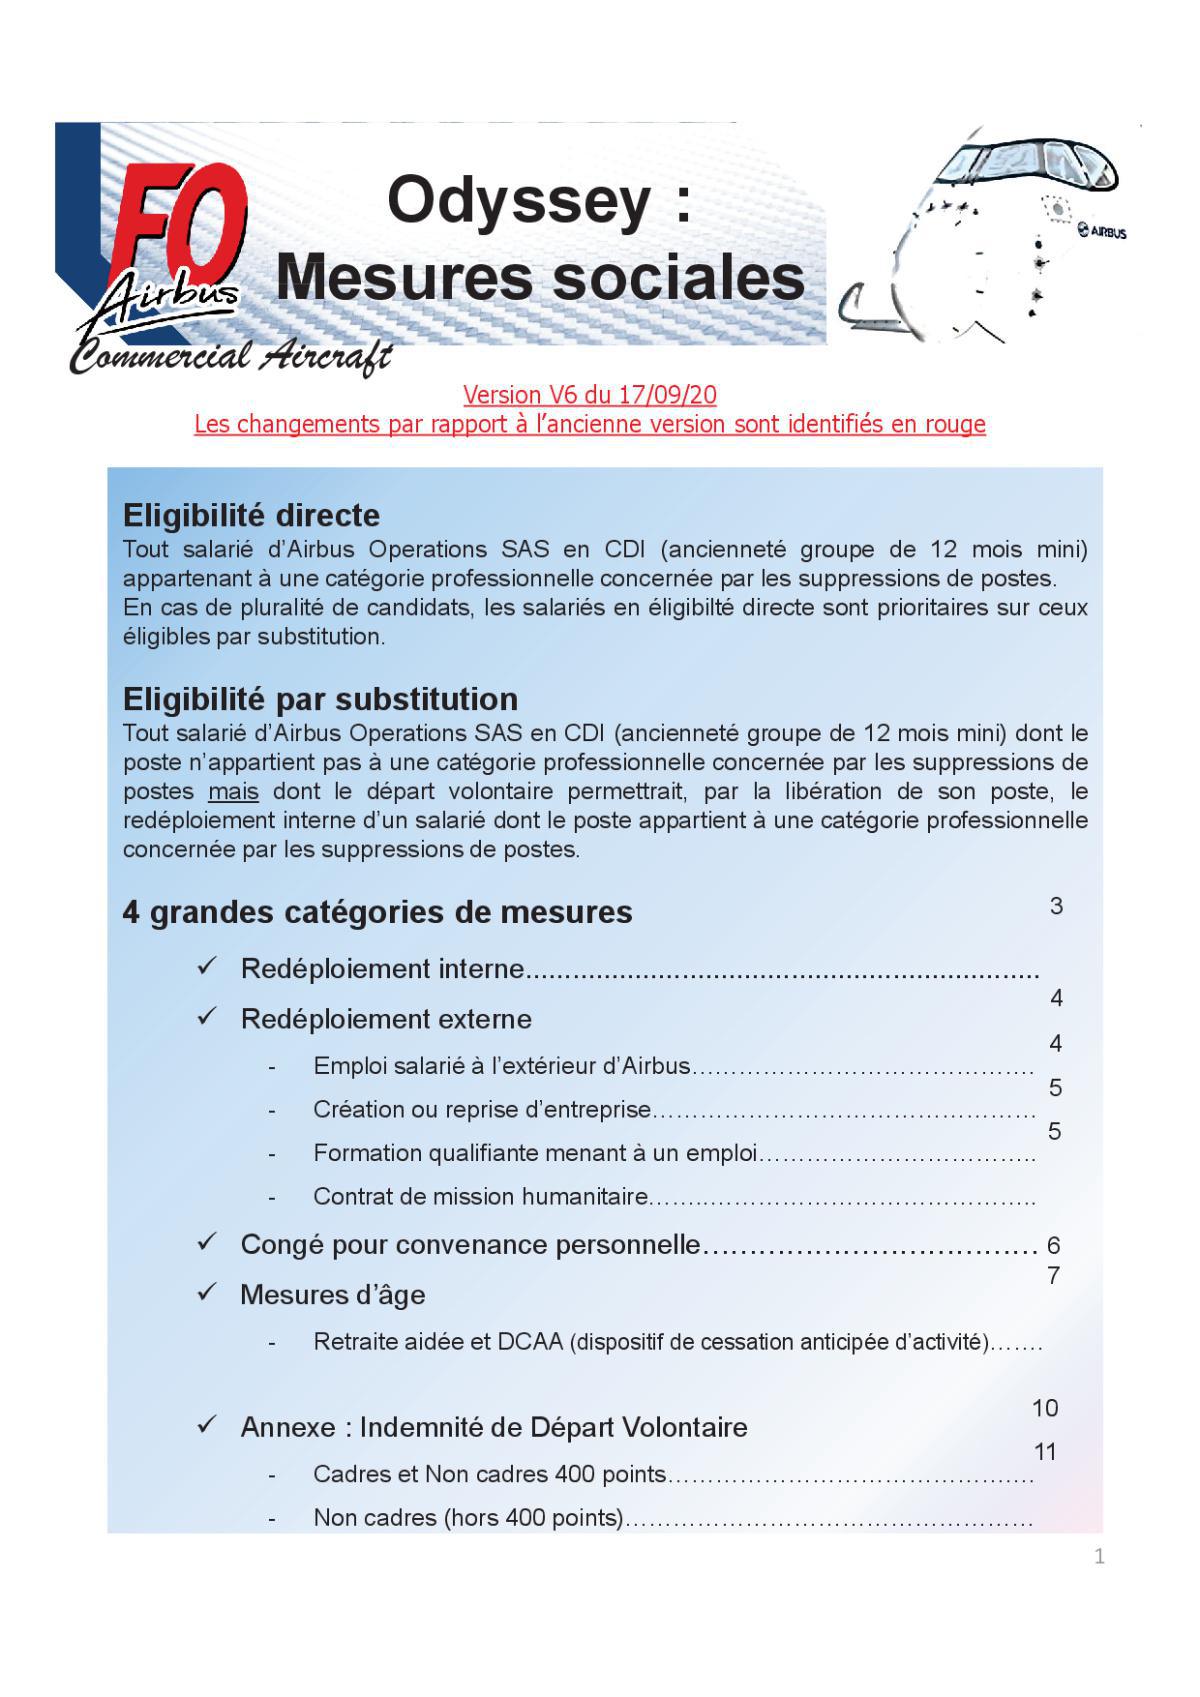 ODYSSEY : Mesures sociales - Réunion 5